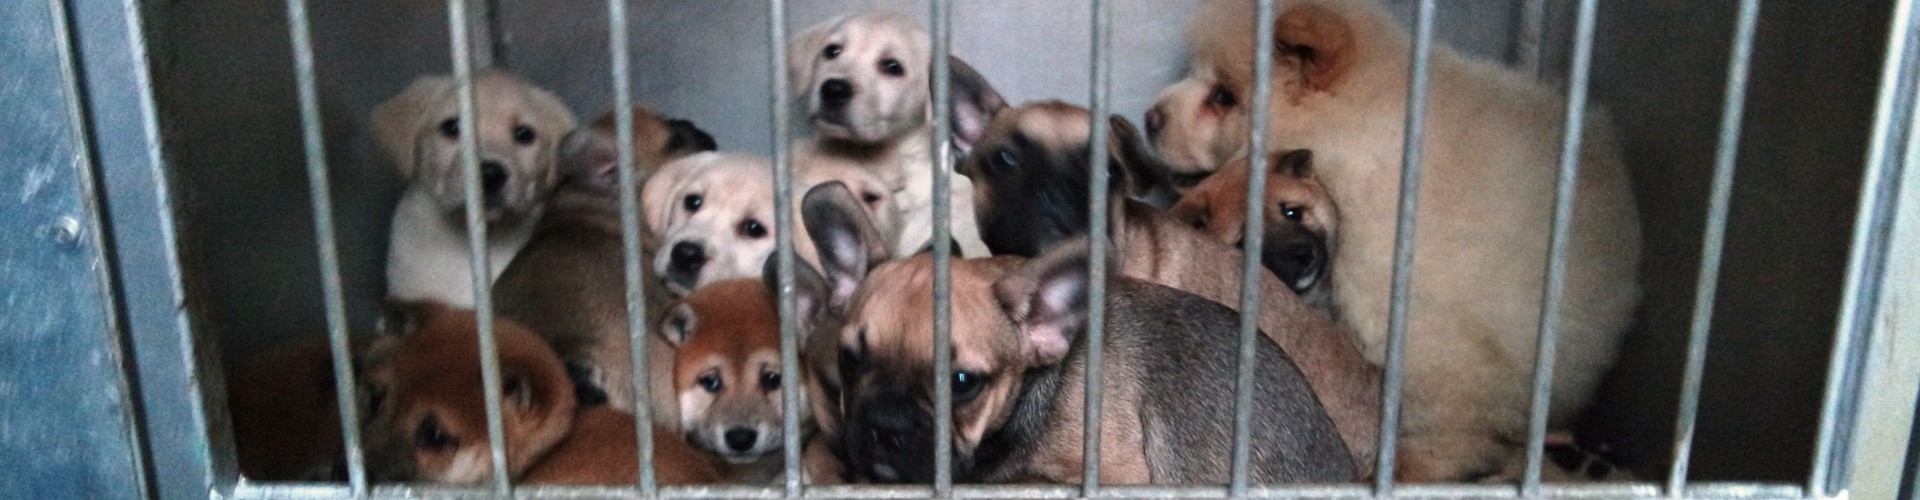 Stop samen met VIER VOETERS de illegale puppyhandel!